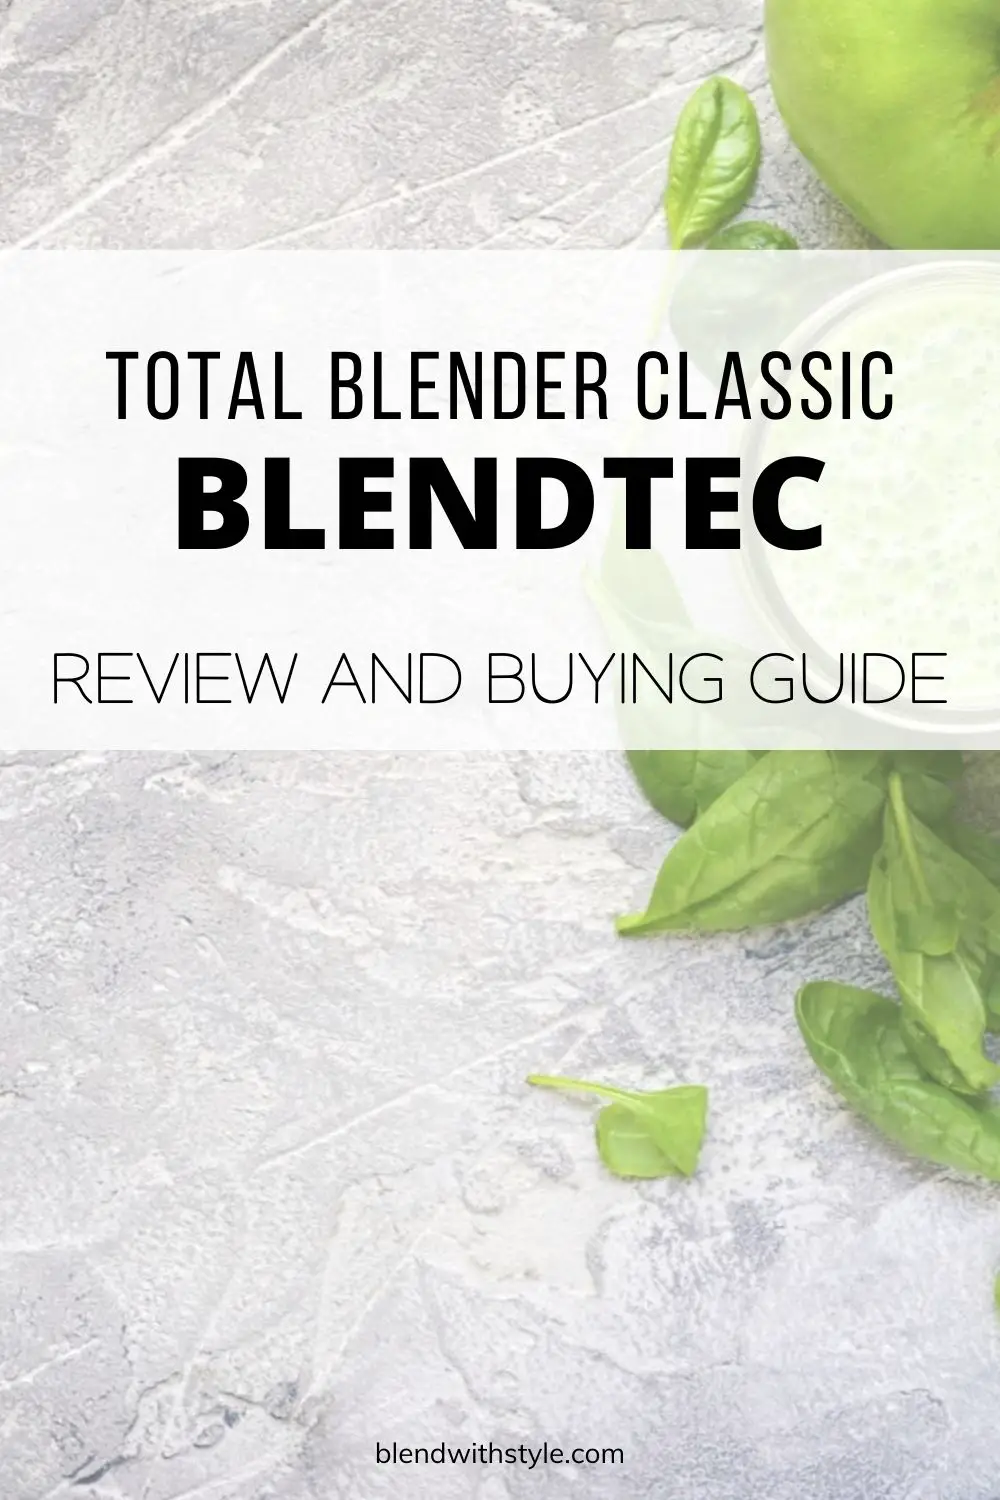 blendtec total blender review